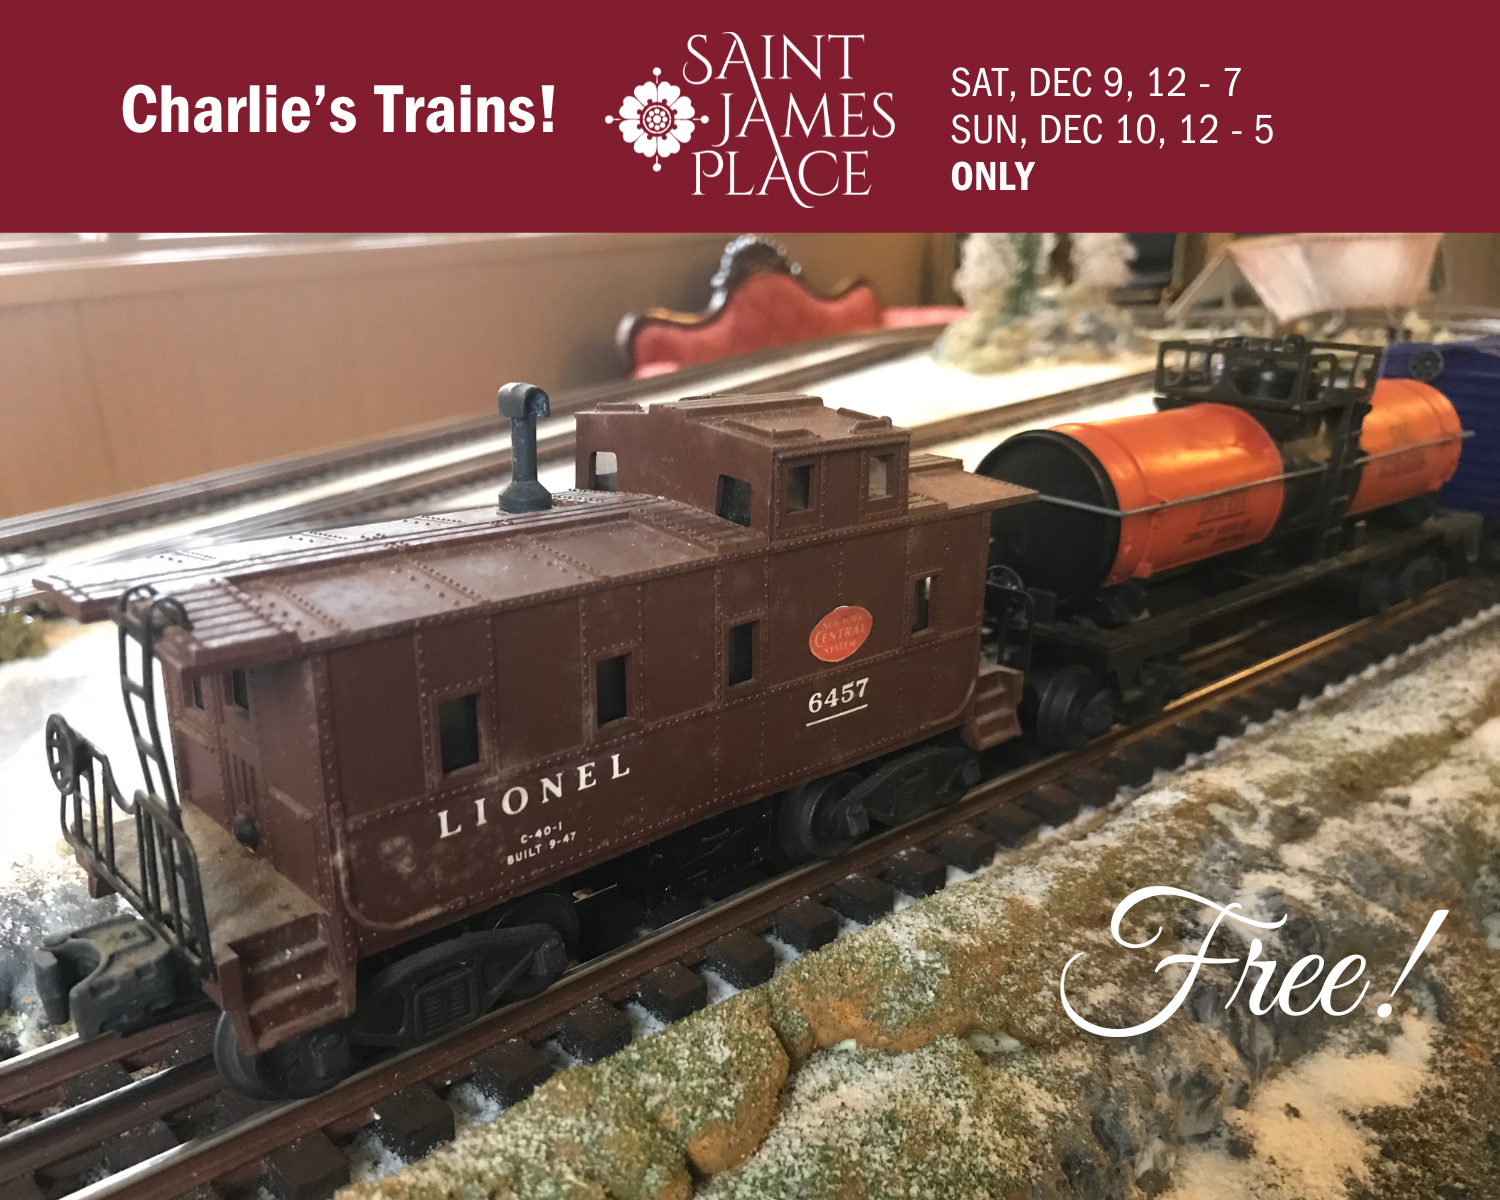 Saint James Place: Charlie's Trains!